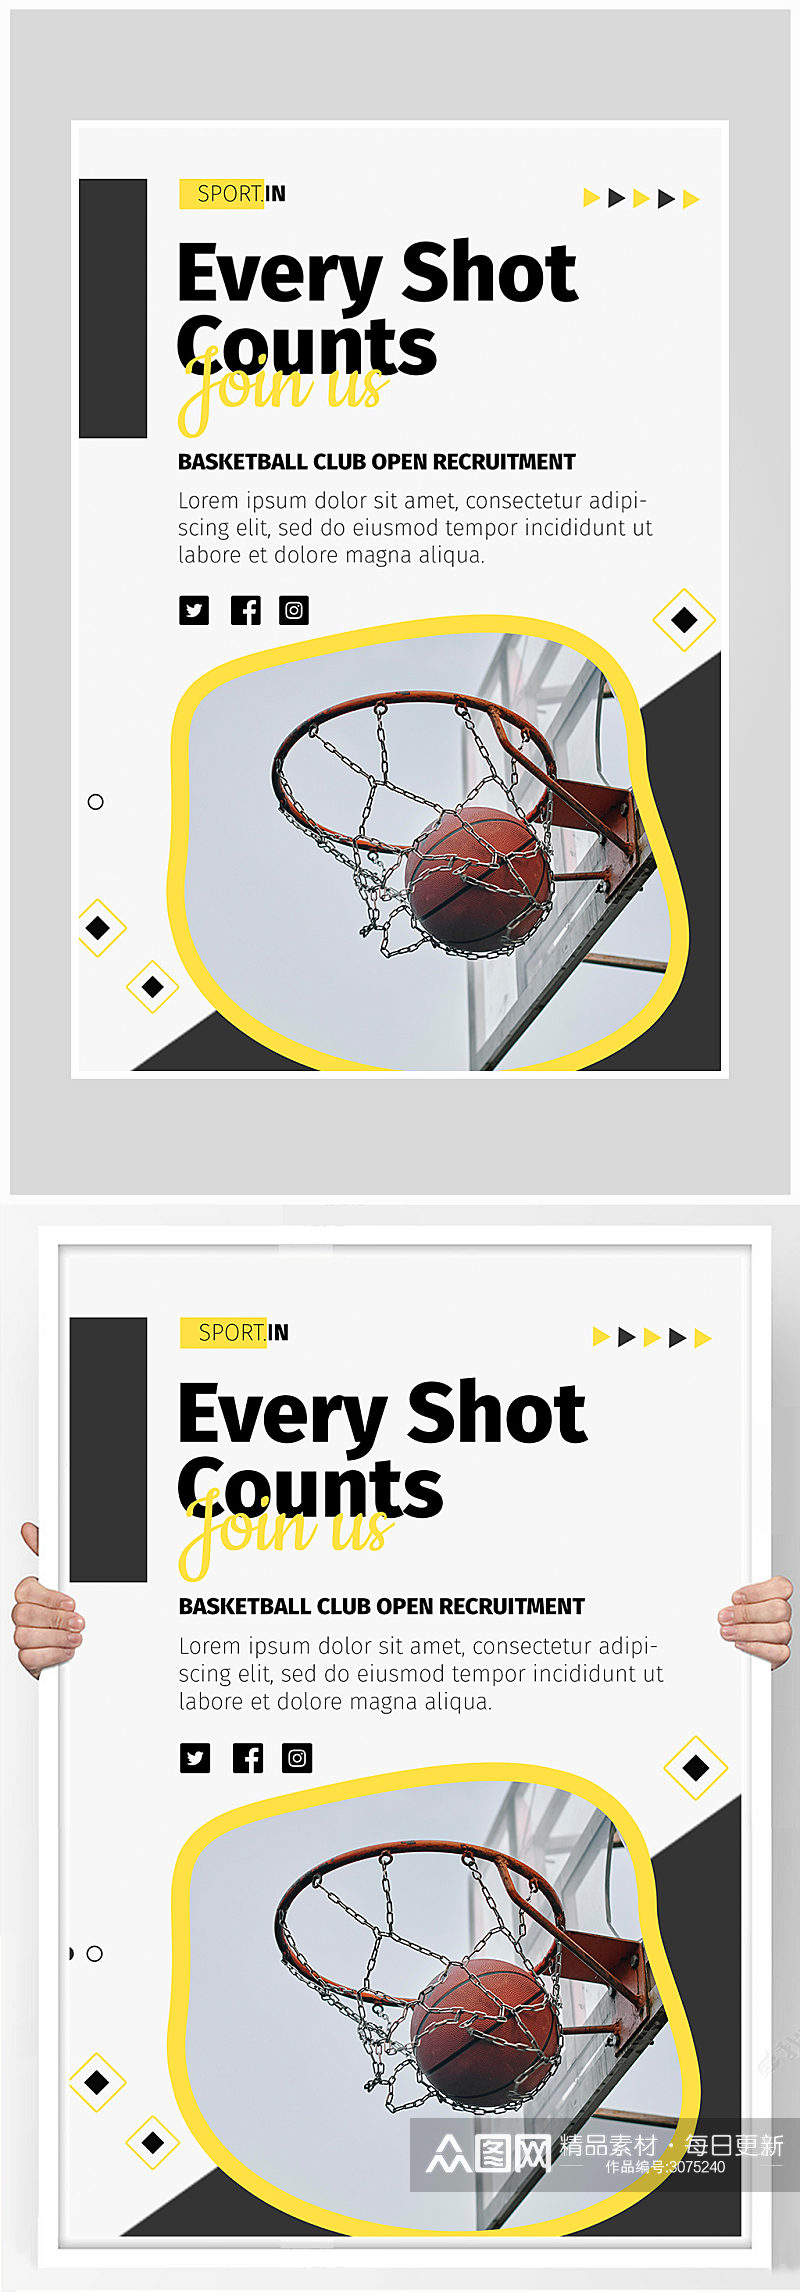 创意简约体育运动篮球海报设计素材